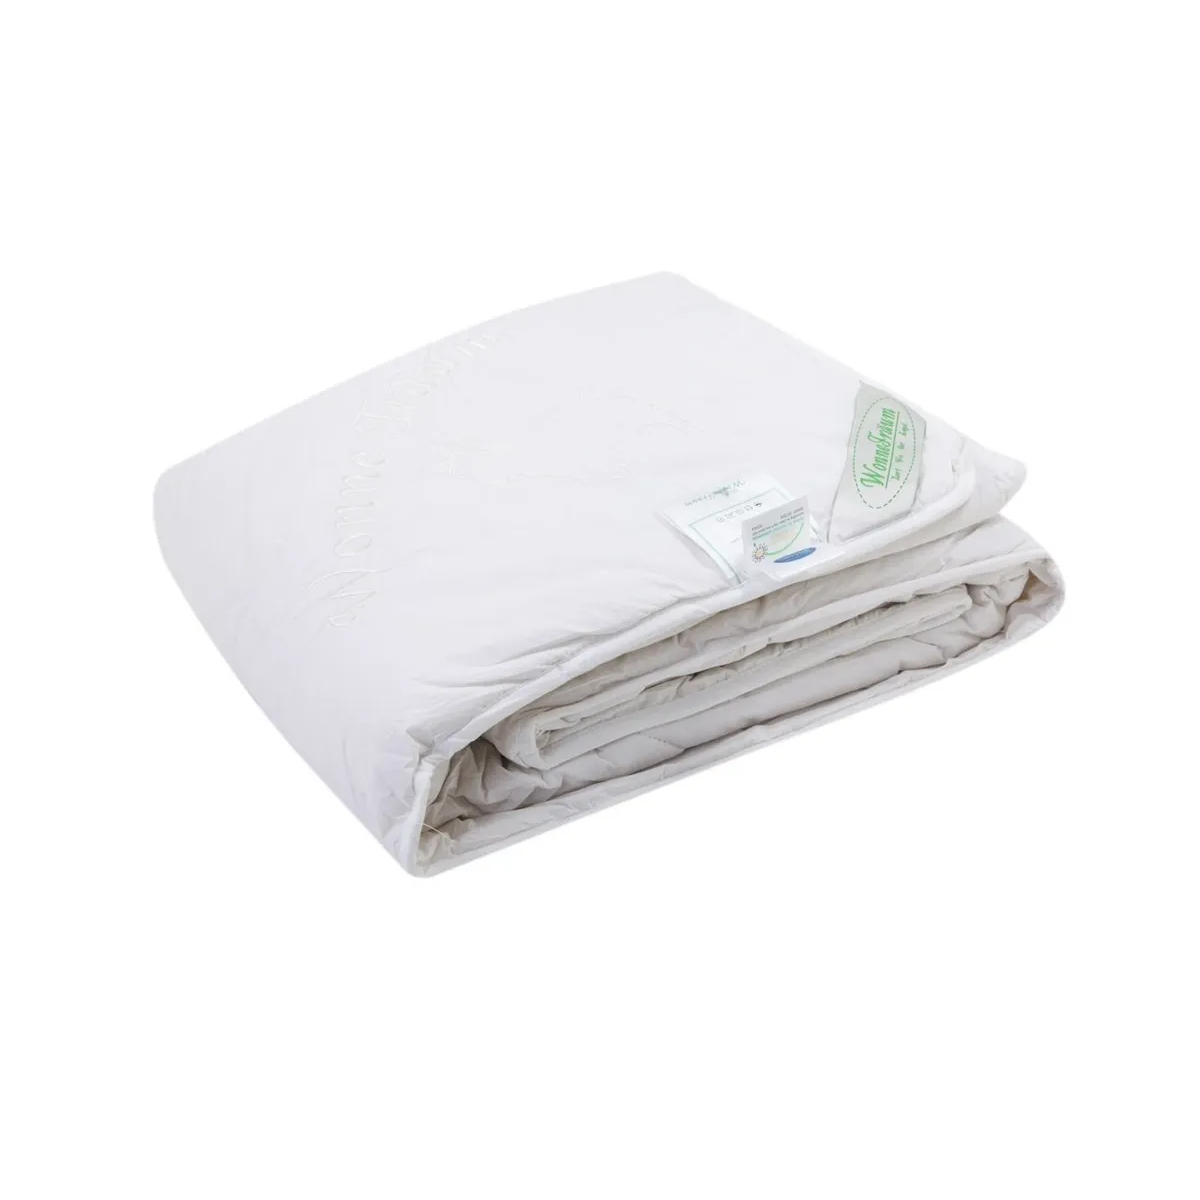 Одеяло кашемировое Wonne Traum белое 200х220 см (2709-136712) одеяло шерстяное wonne traum кремовое 200х220 см 2709 26245